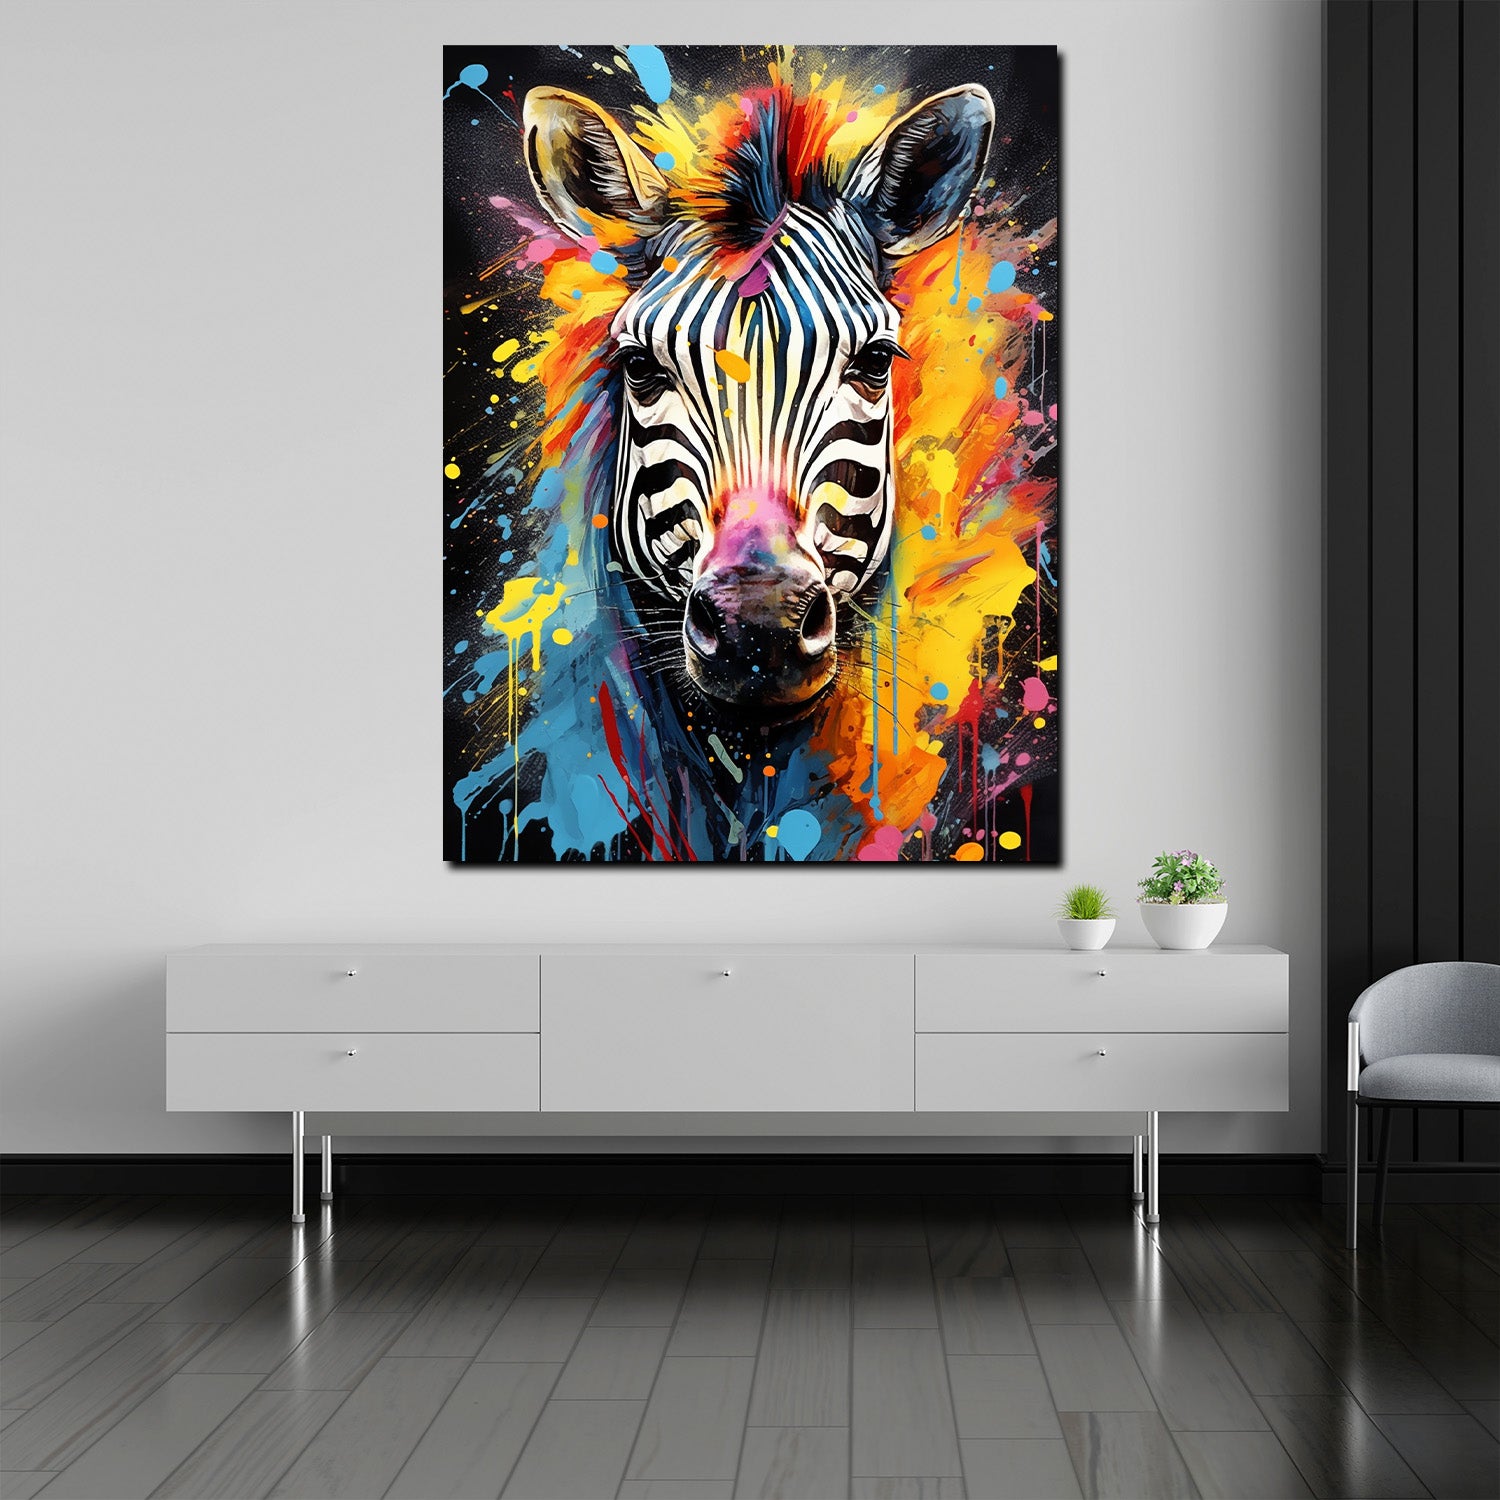 Wandbild Zebra abstrakt Pop Art